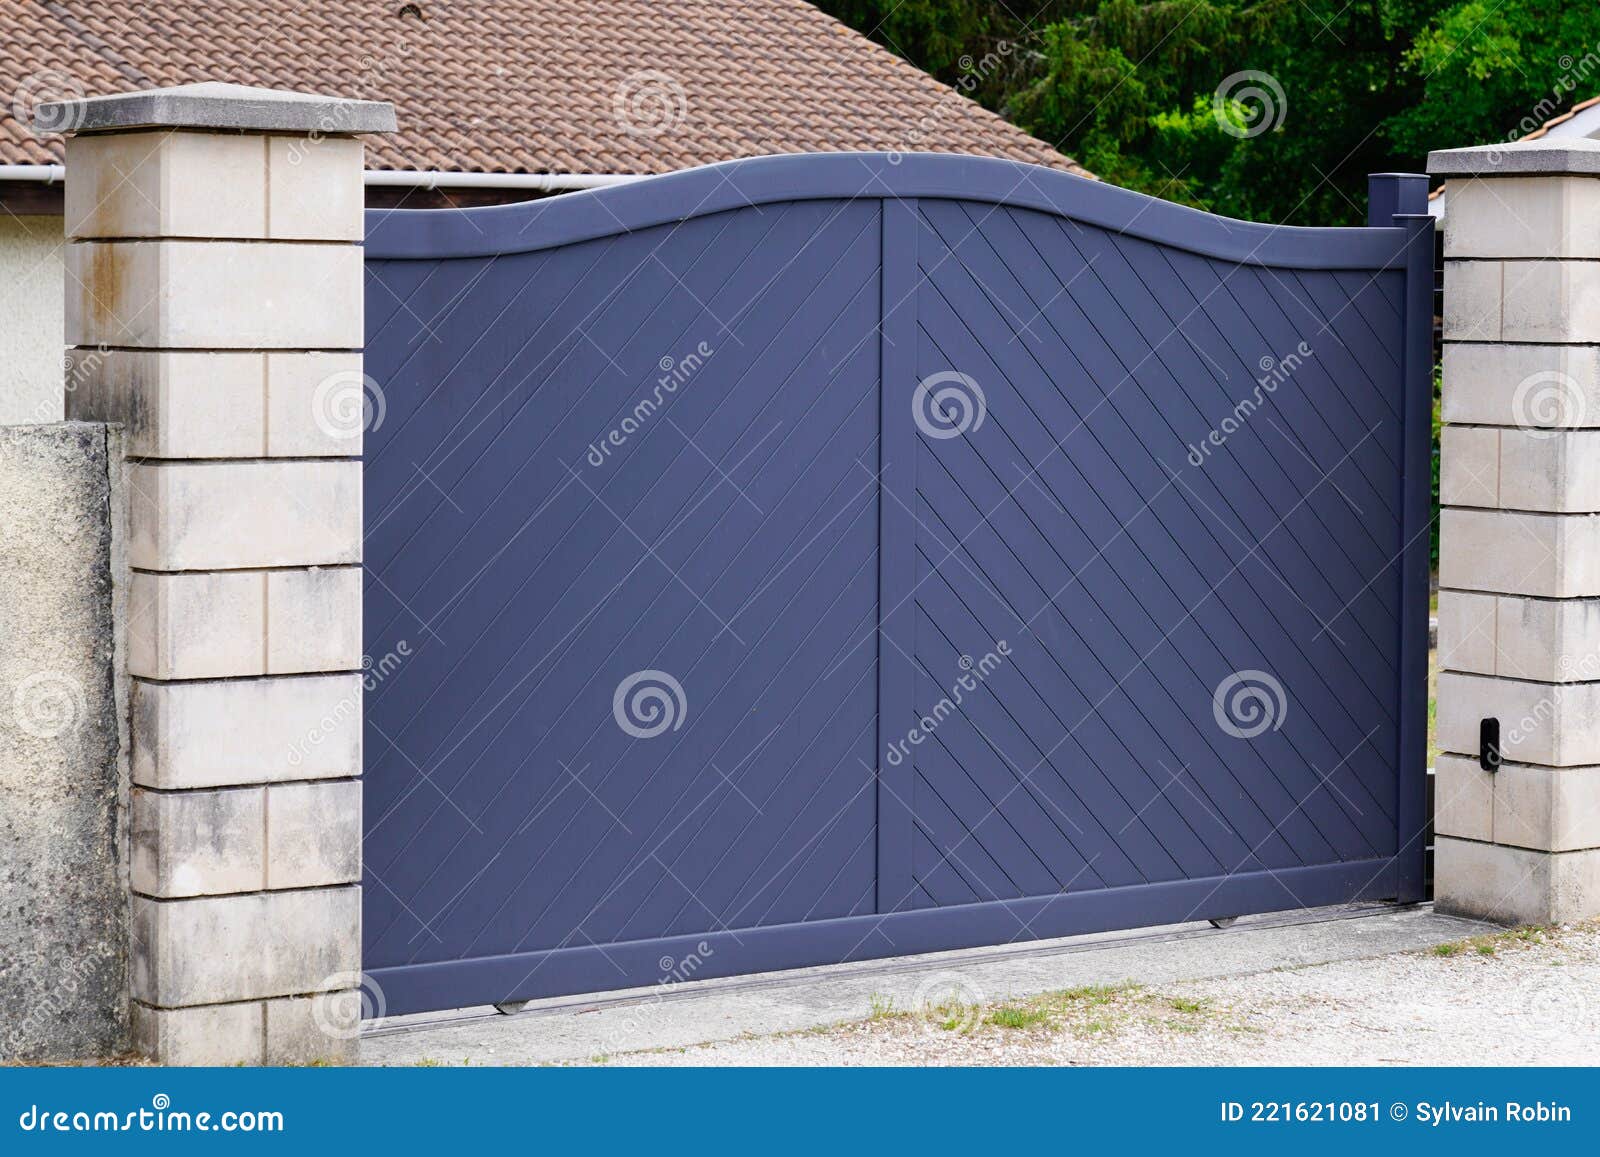 Portal Grey Design Home Door Metal Aluminum Gate of Modern Garden ...